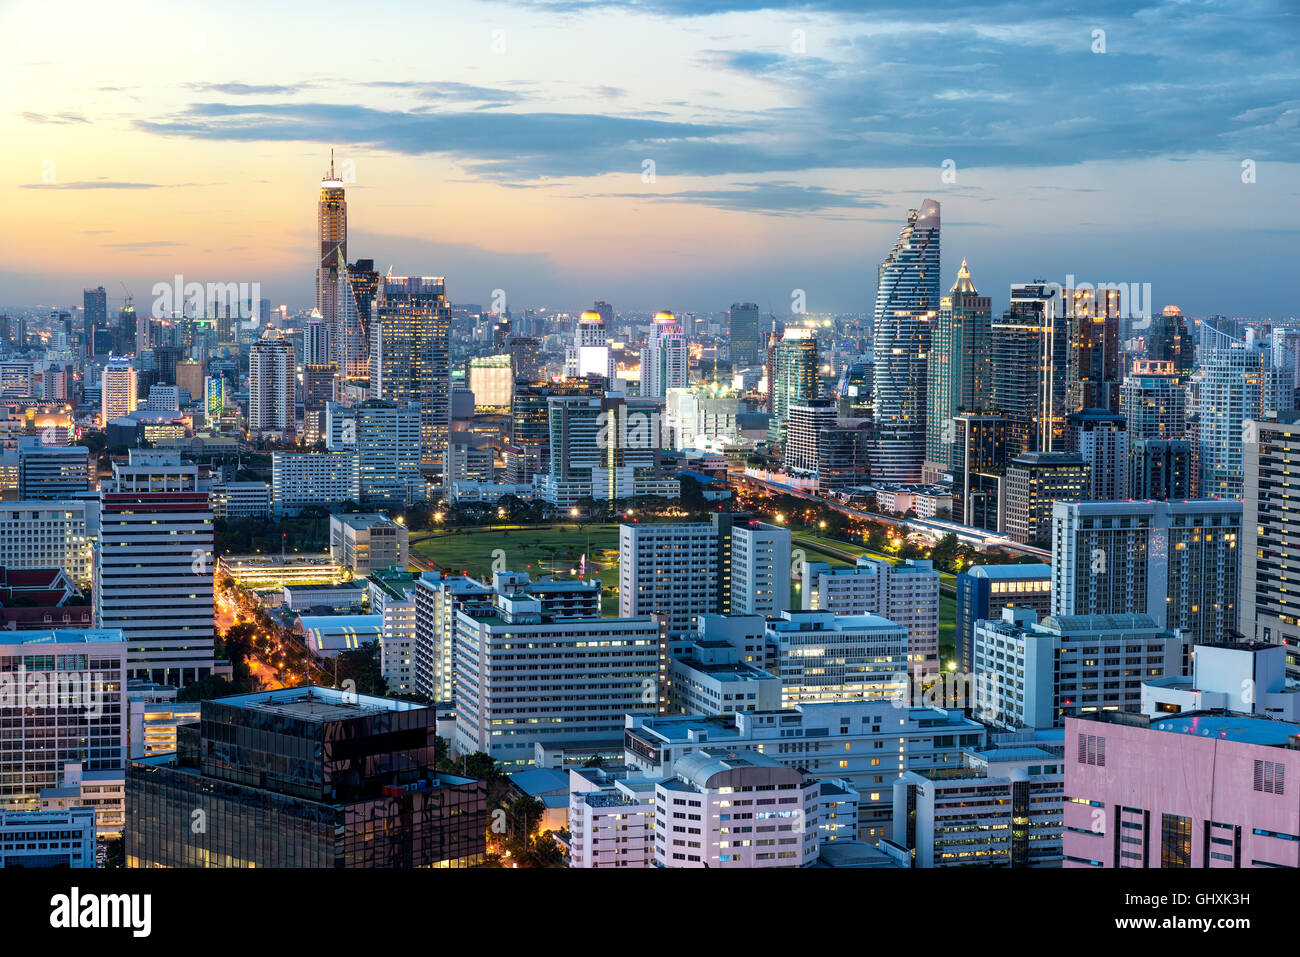 La ville de Bangkok avec skyscraper building dans le centre du quartier des affaires de Bangkok, Thaïlande Banque D'Images